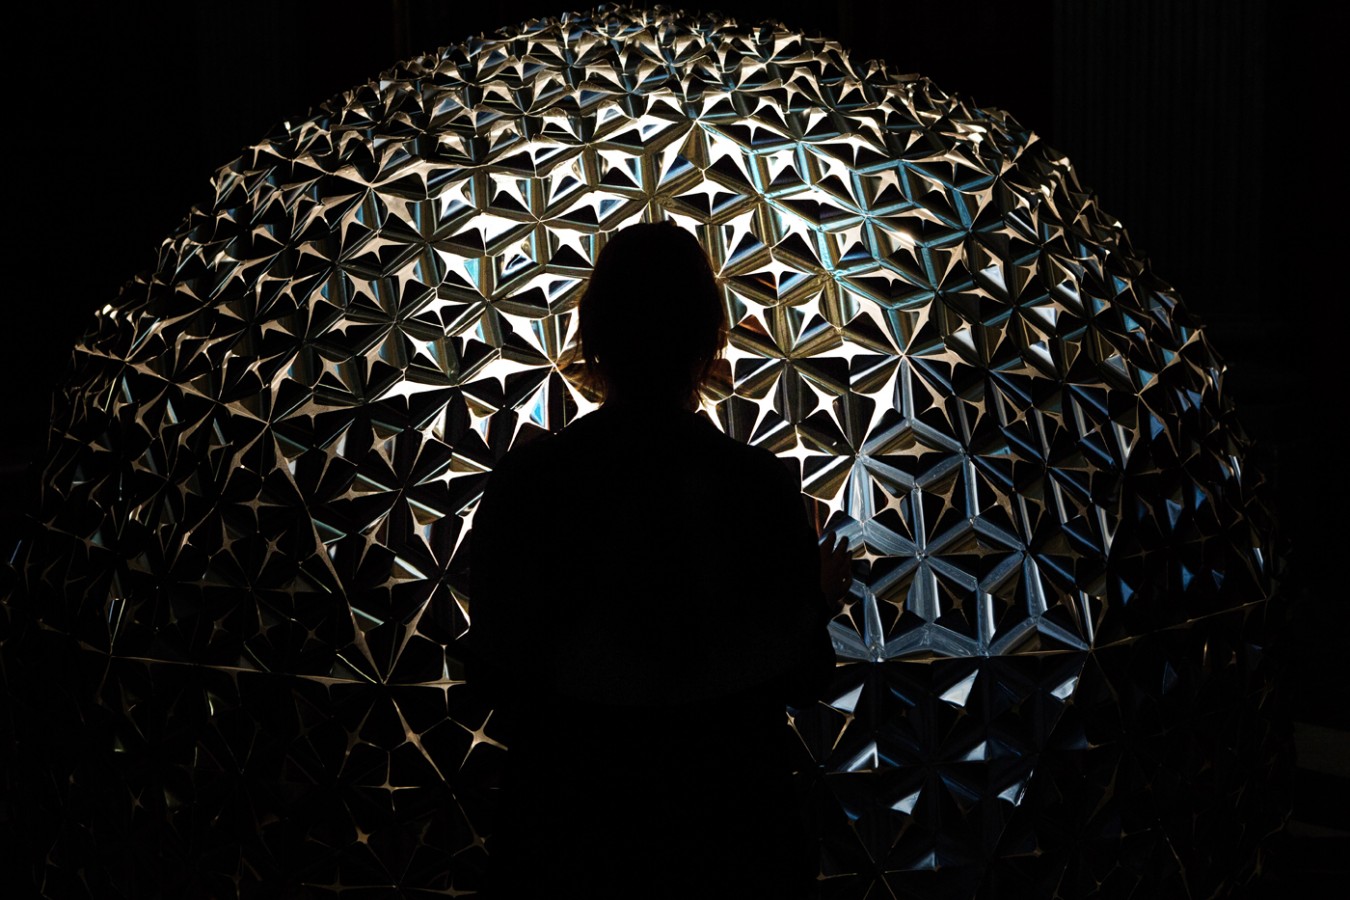 Peter de Man project Lotus Dome